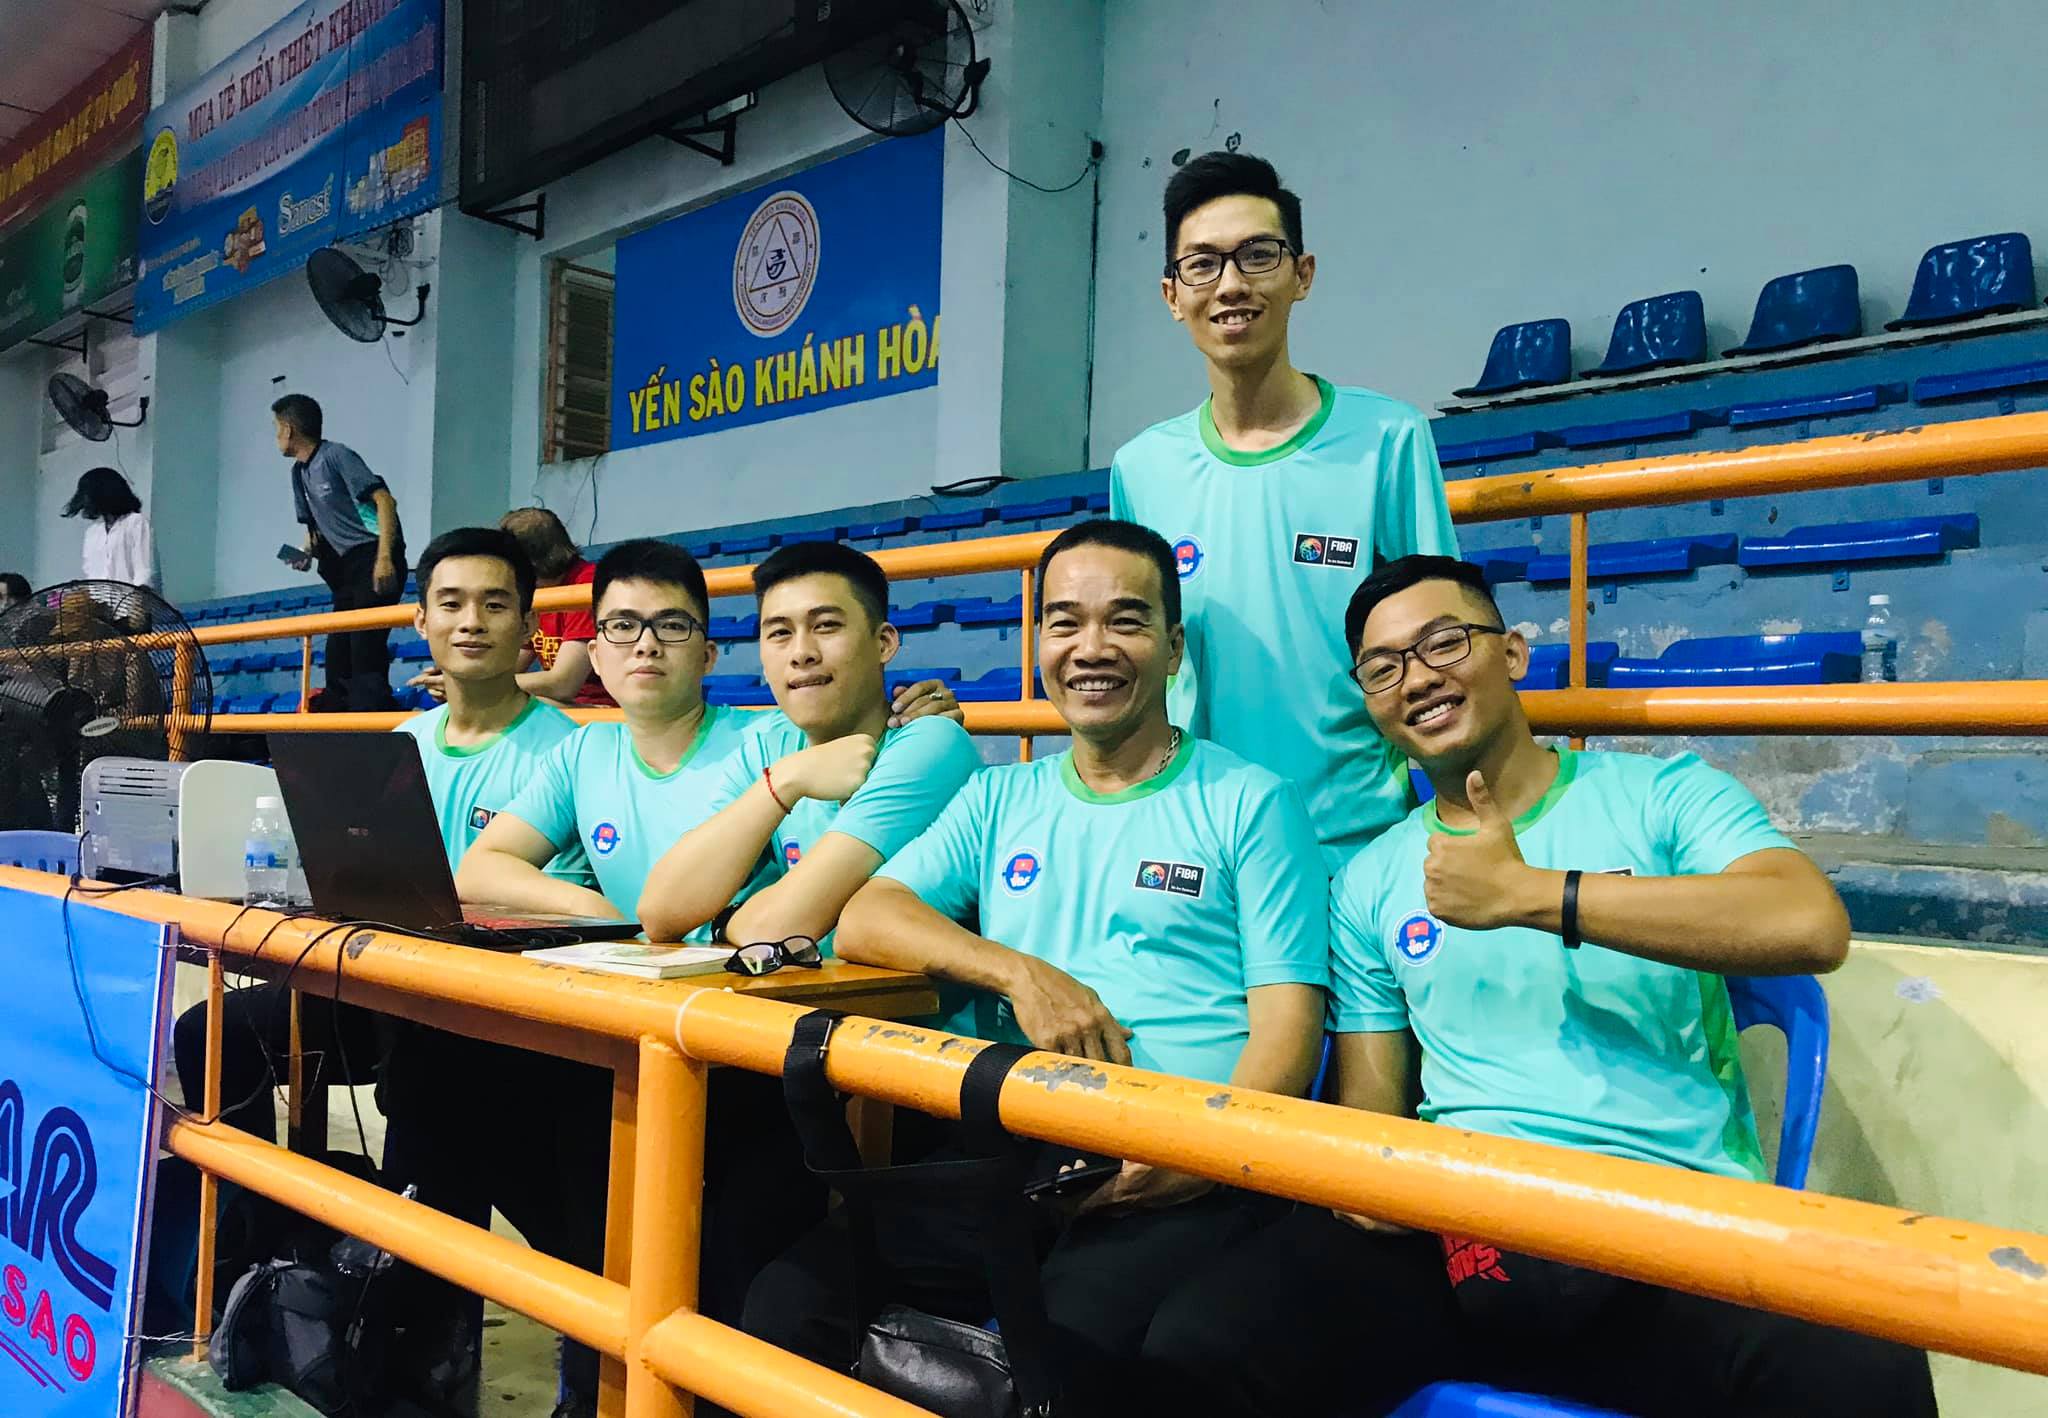 Bóng rổ Vô địch Quốc gia 2019 - Cúp Ngân hàng Bản Việt: Cải tiến nâng tầm bóng rổ quốc nội